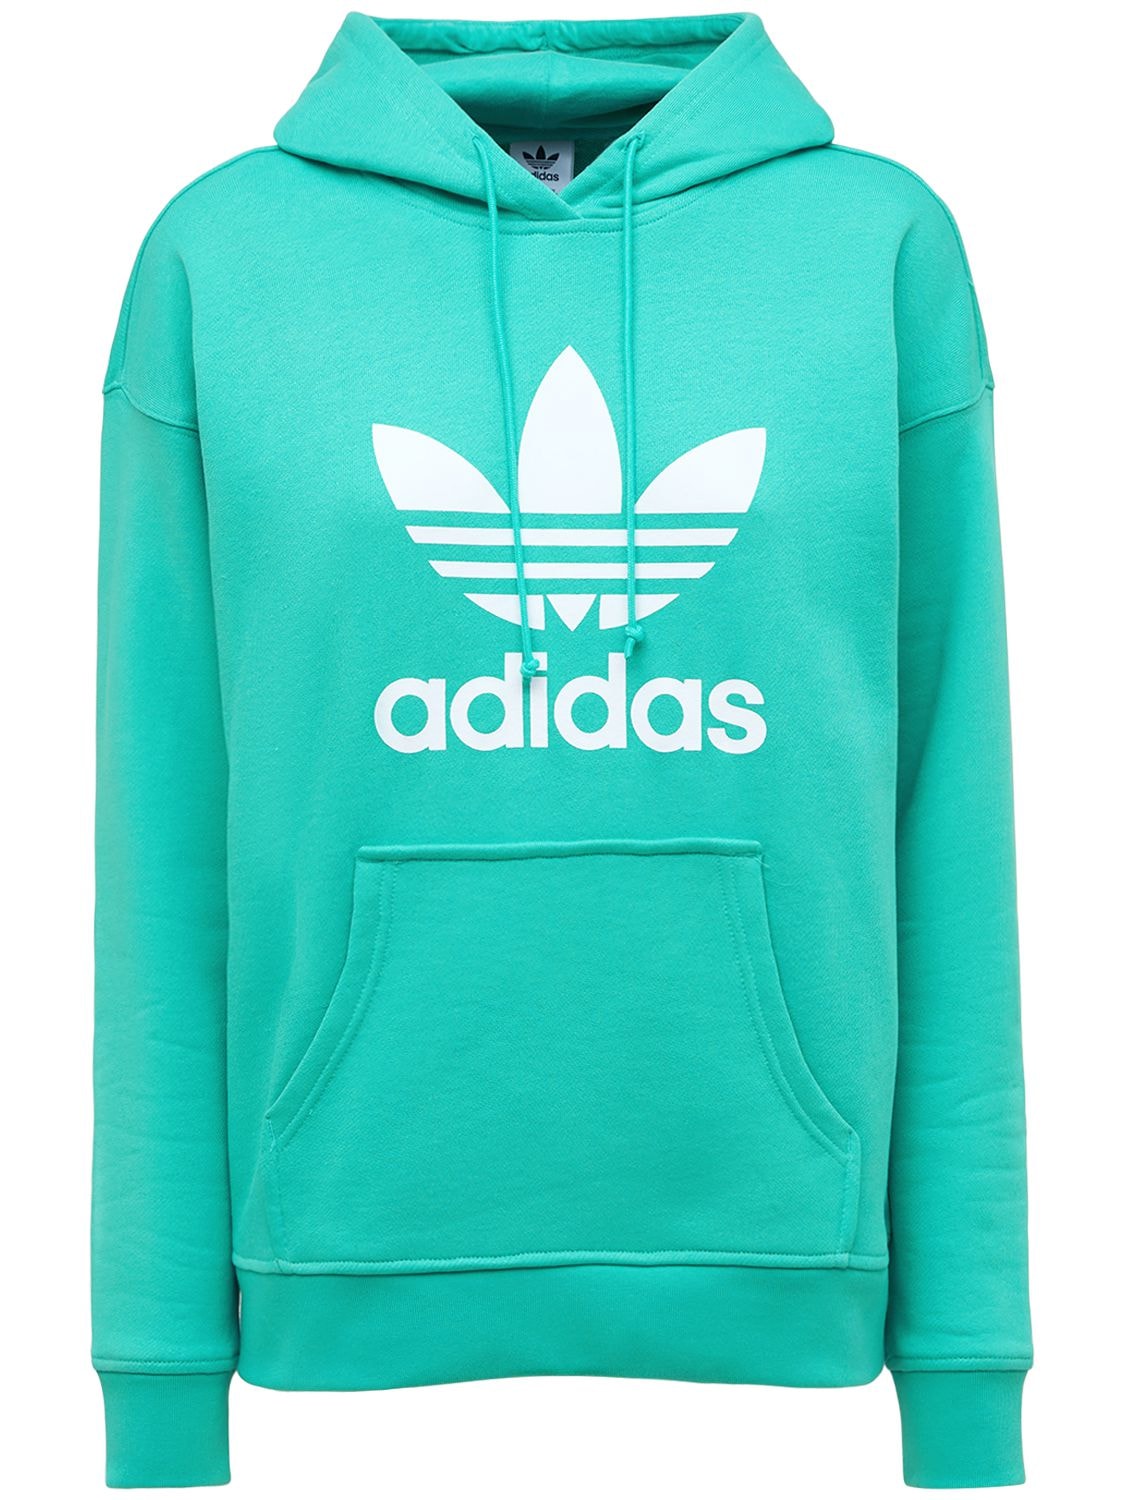 Adidas Originals - Trefoil logo cotton hoodie - Green | Luisaviaroma